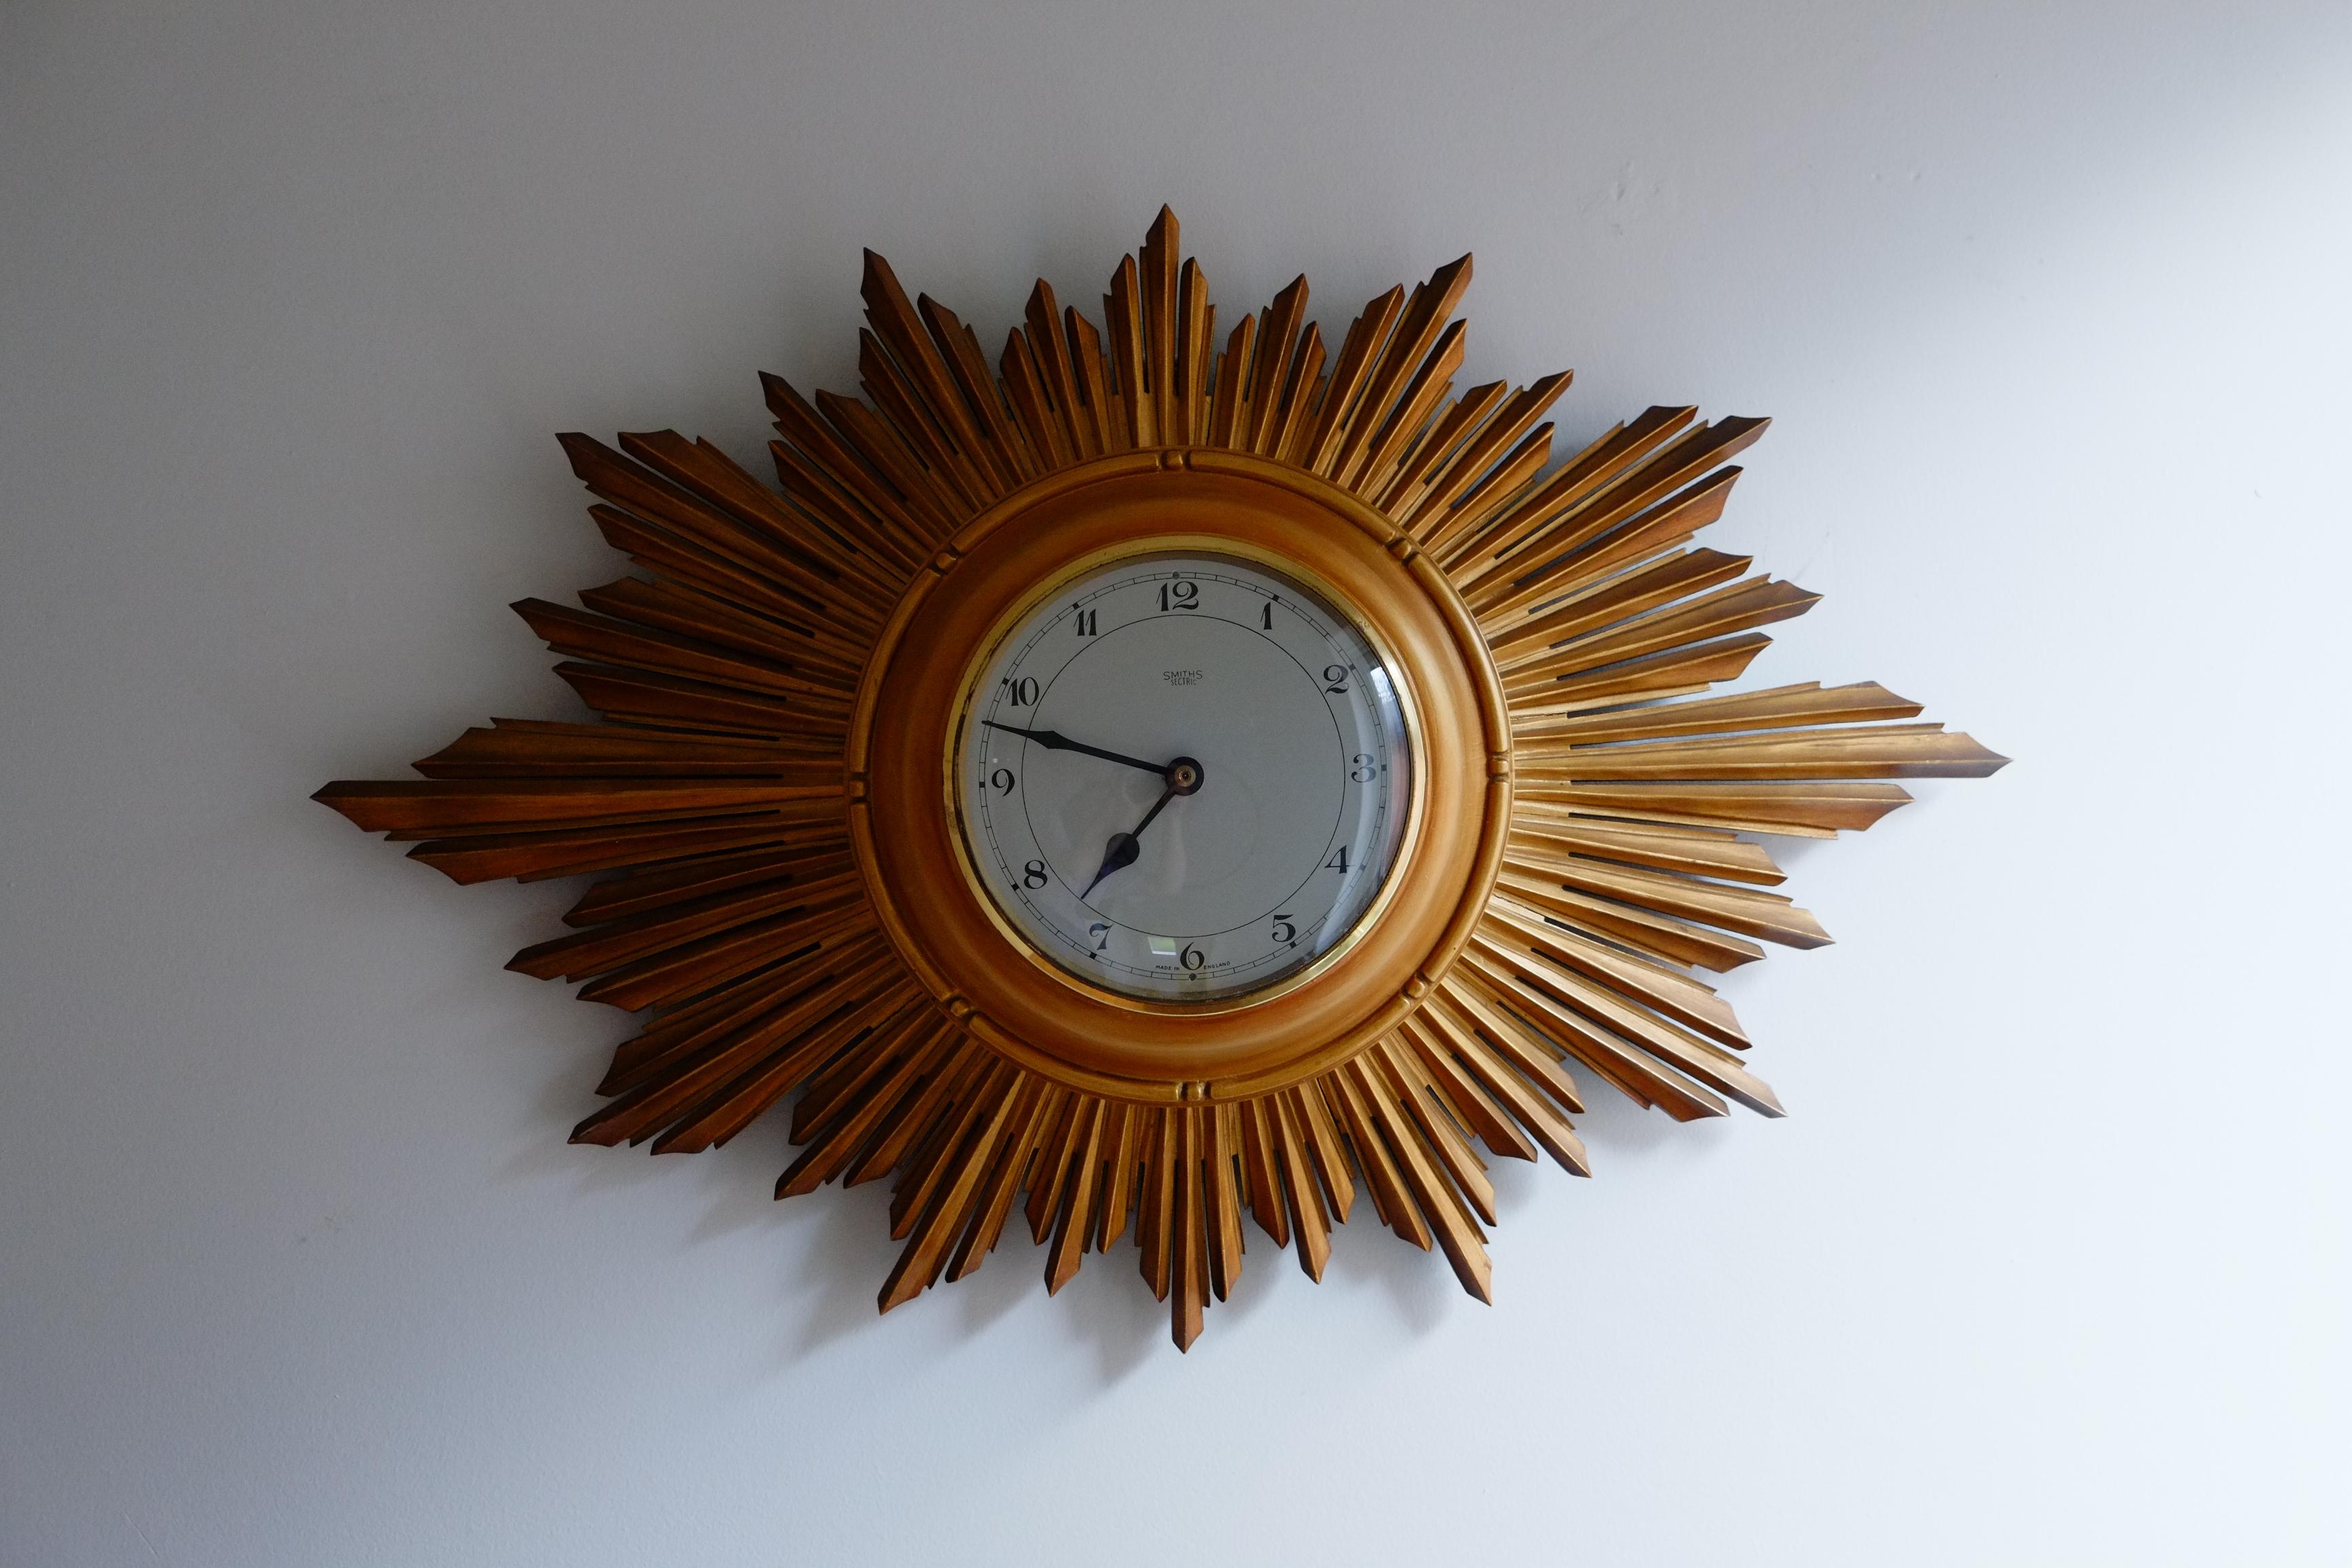 Belle horloge murale des années 1960 ou 1970 de la marque Smiths. Cette horloge rare est dotée d'un magnifique grand soleil ovale doré, sculpté à la main dans du bois, et d'un cadran simple en aluminium. Fabriqué en Angleterre. Cette pièce est